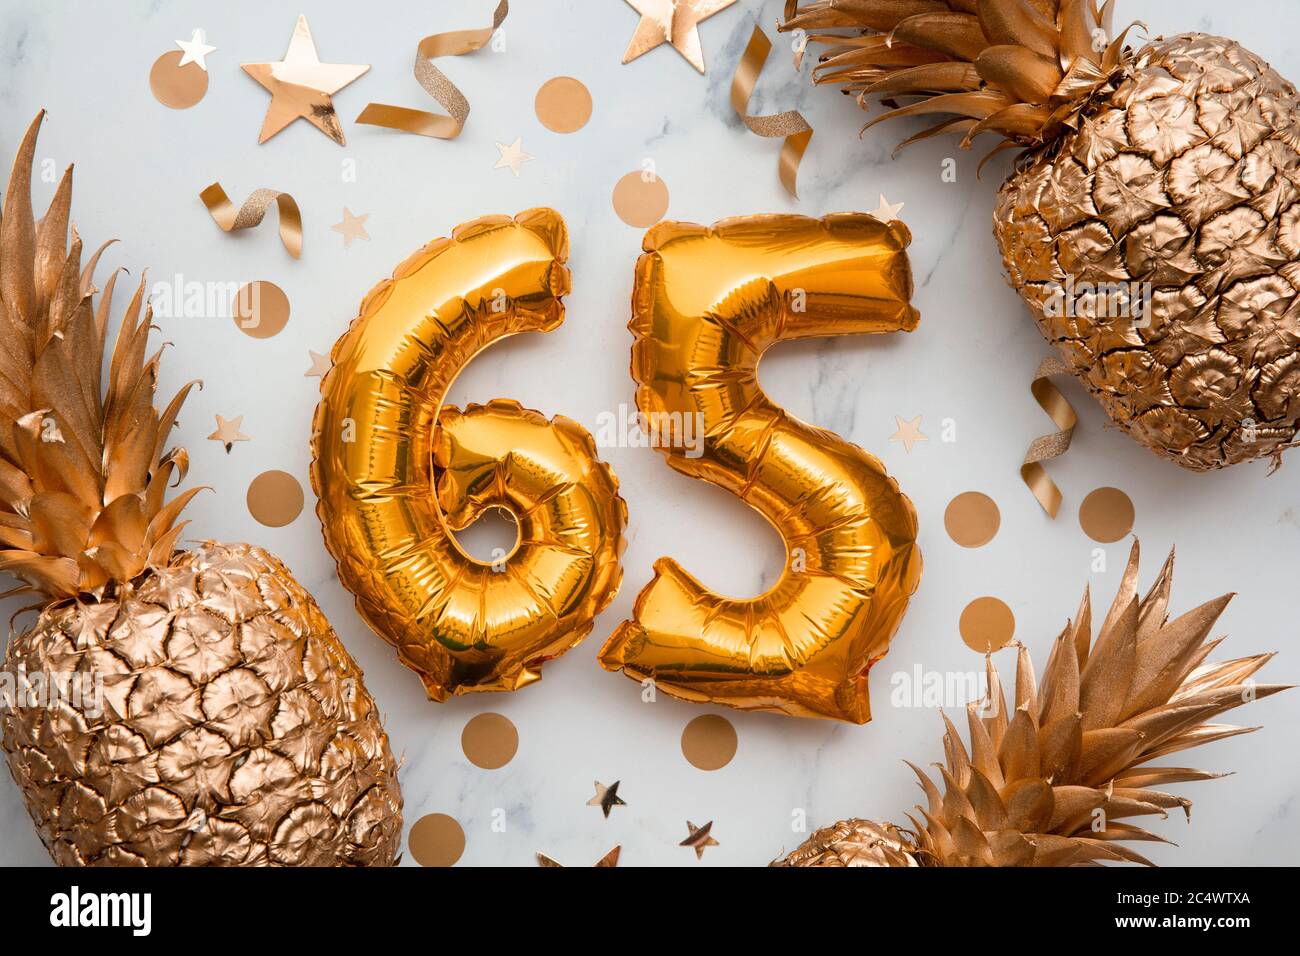 tarjeta de celebración de 65 cumpleaños con globos de papel de aluminio dorado y piñas doradas Foto de stock